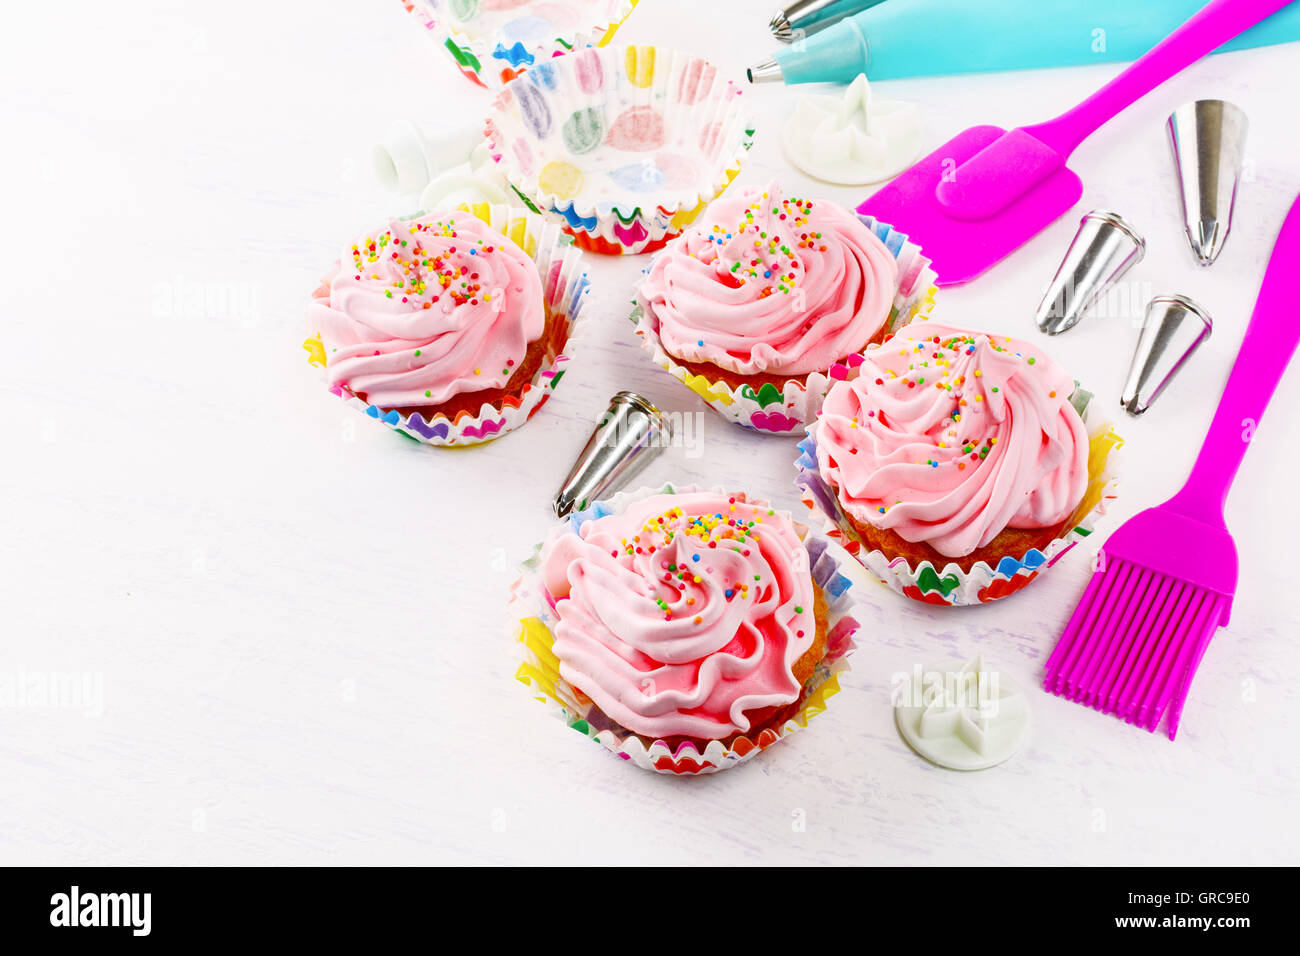 Dekorierten Geburtstag Cupcakes und Kochgeschirr Hintergrund. Geburtstag-Cupcake mit rosa Schlagsahne. Hausgemachte Partei Cupcakes. Stockfoto